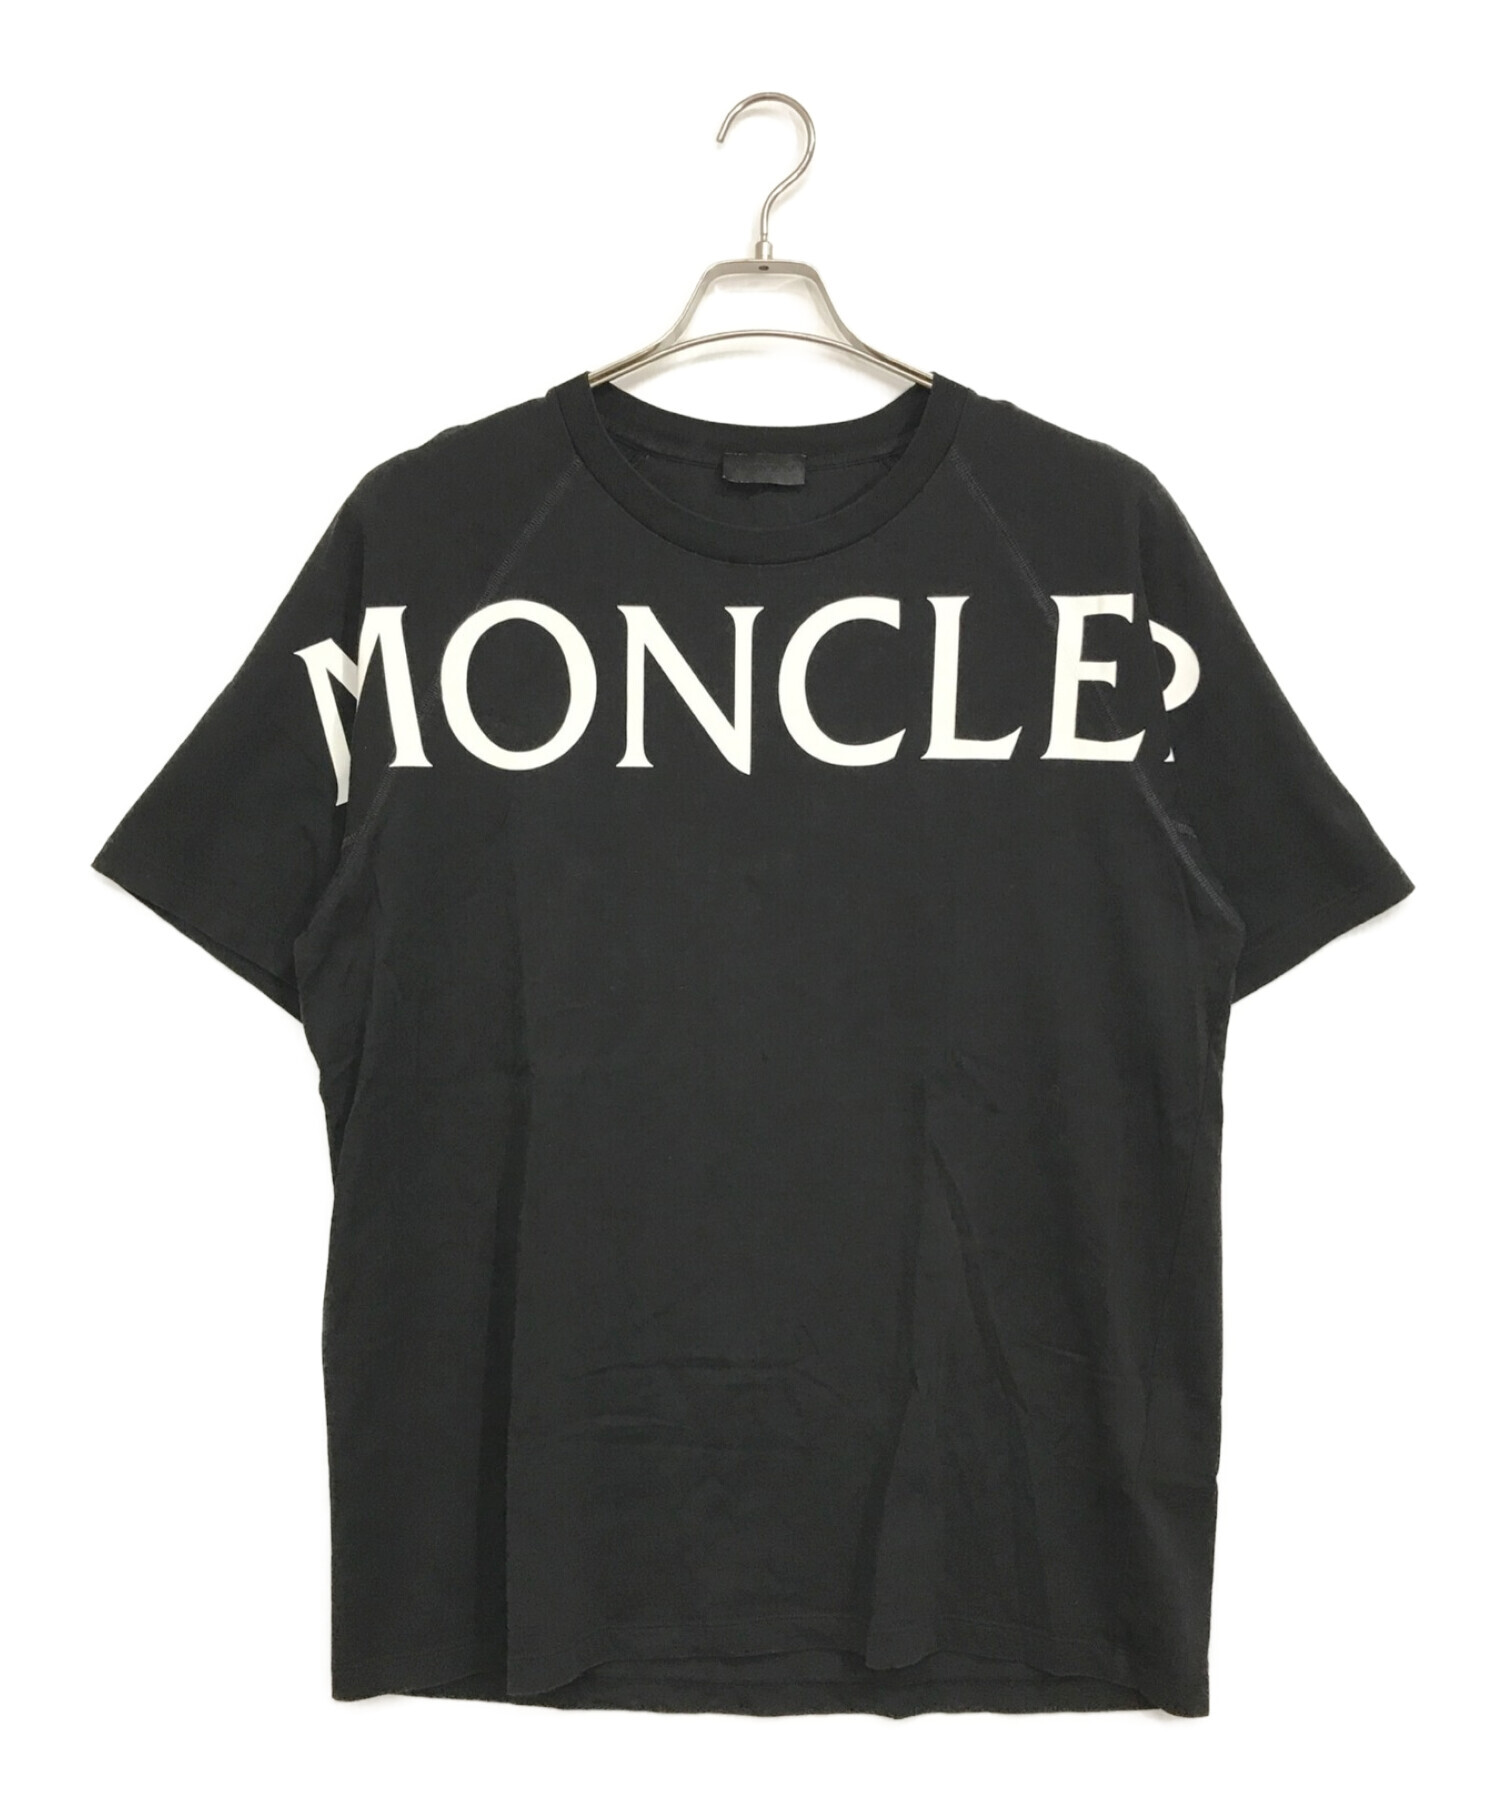 MONCLER モンクレール MAGLIA T-SHIRT ネックロゴデザイン 半袖Tシャツ カットソー ブラック